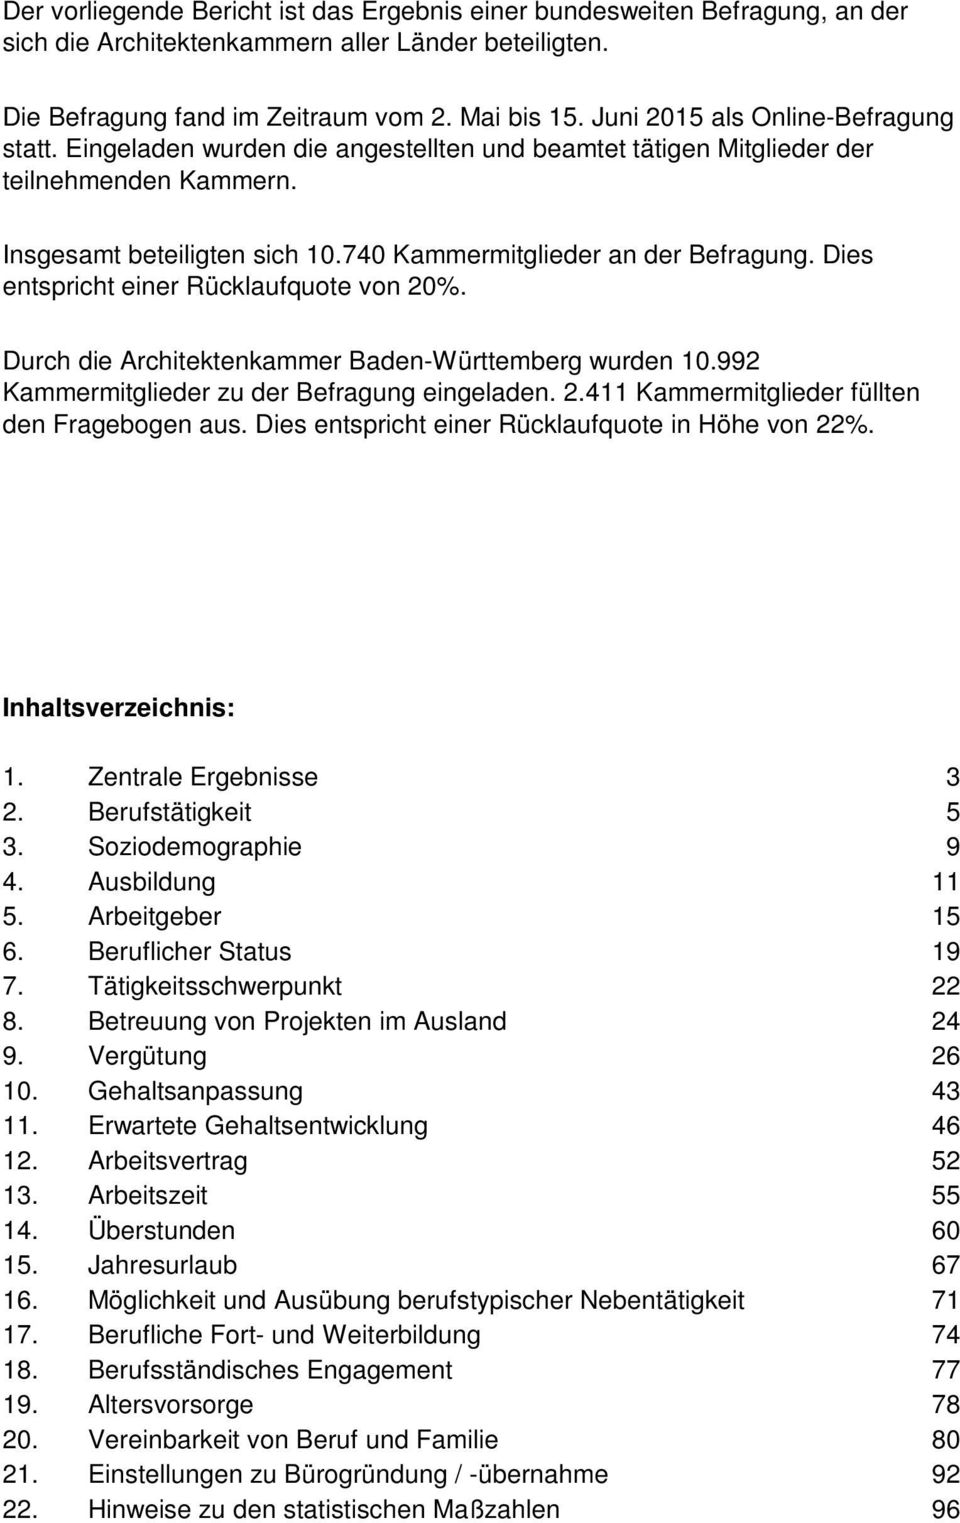 Dies entspricht einer Rücklaufquote von 20%. Durch die Architektenkammer Baden-Württemberg wurden 10.992 Kammermitglieder zu der Befragung eingeladen. 2.411 Kammermitglieder füllten den Fragebogen aus.